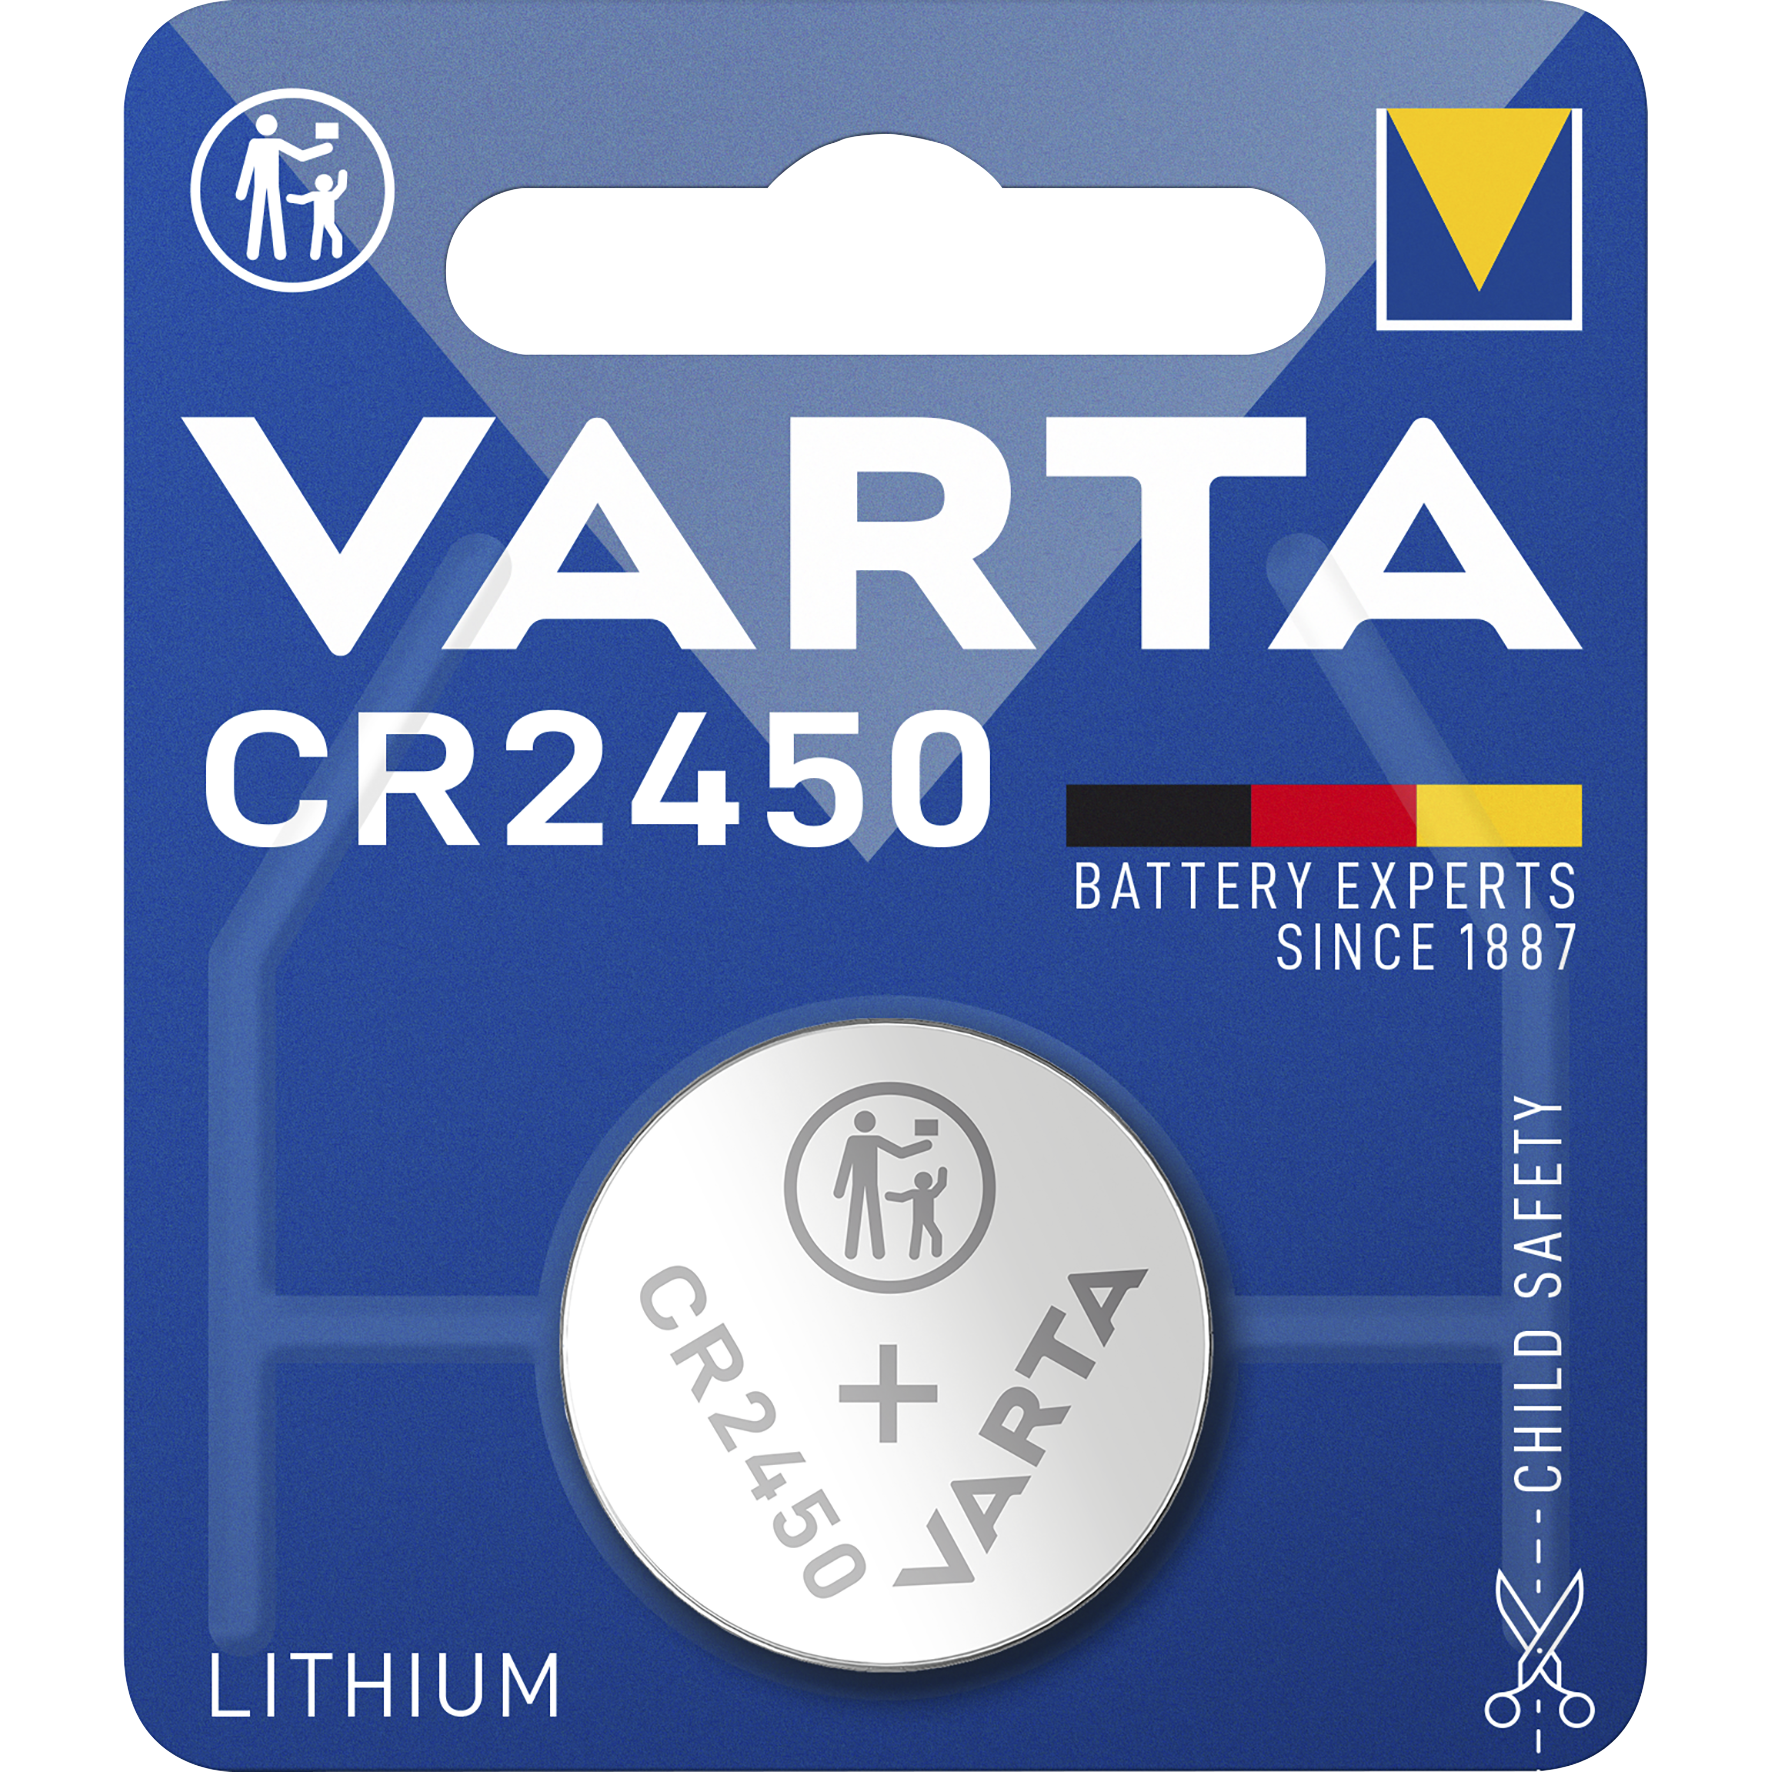 Lithium-Knopfzelle VARTA ''Electronics'', CR 2450, 560mAh, 3V, 1er-Blister